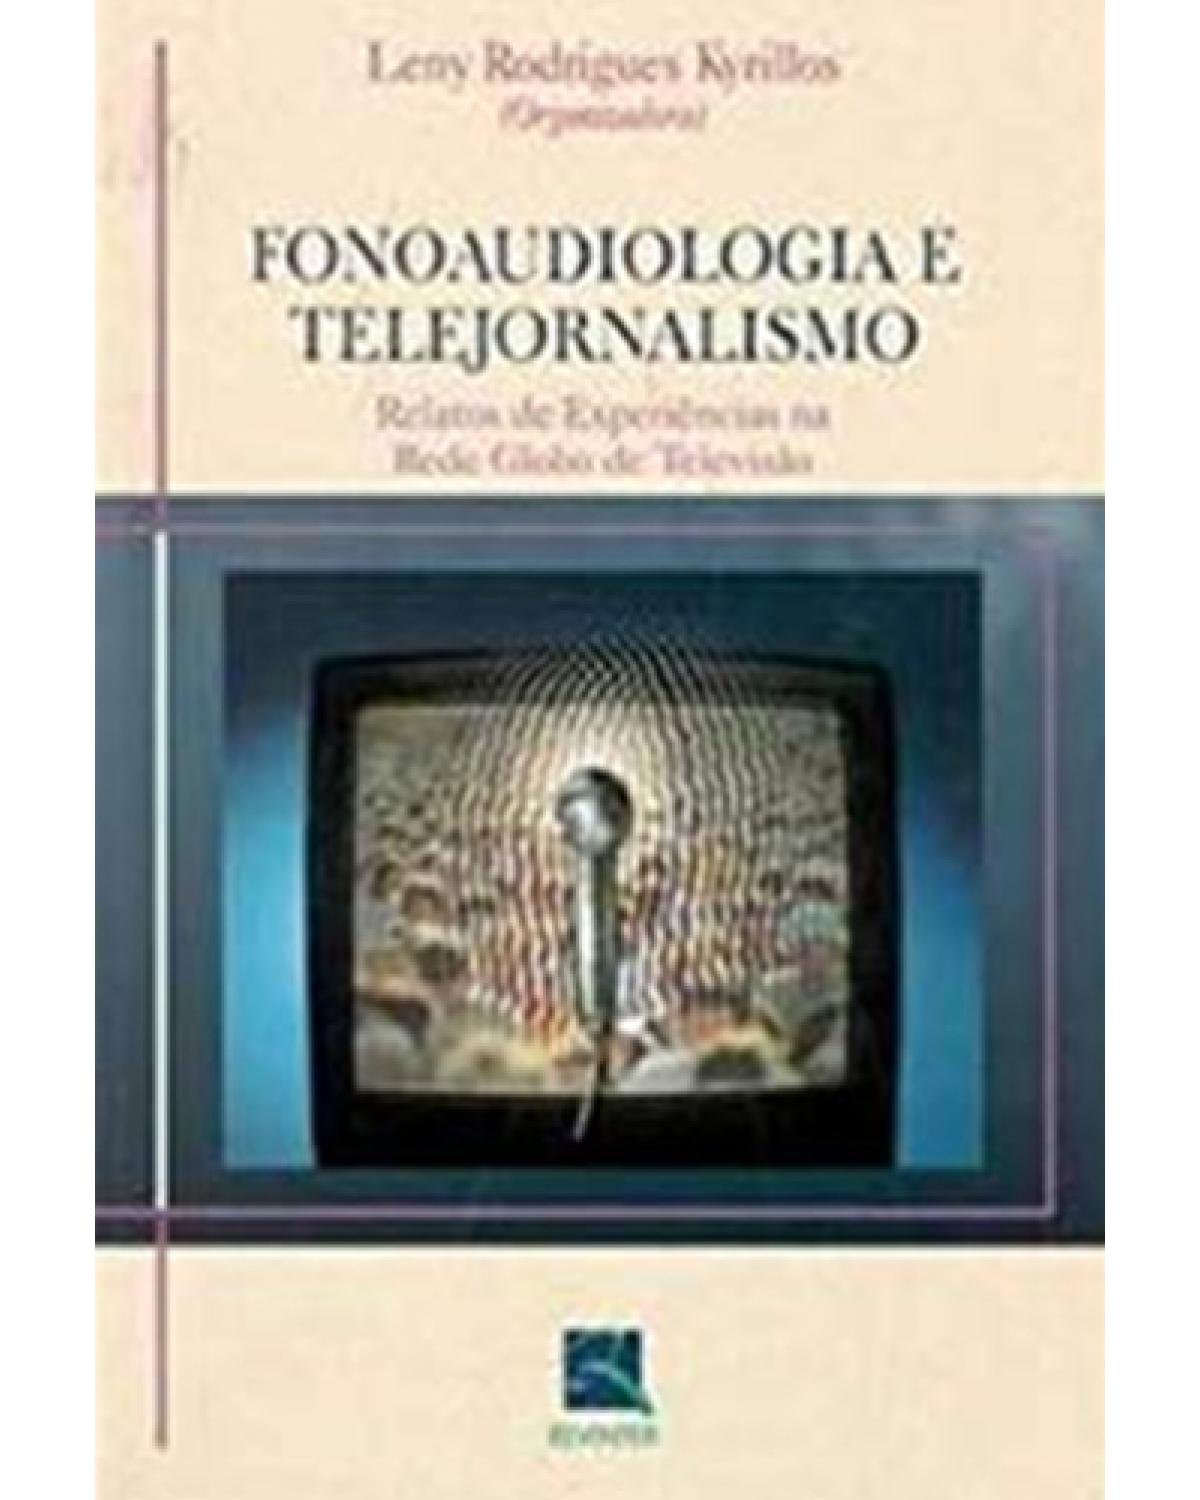 Fonoaudiologia e telejornalismo - 1ª Edição | 2003